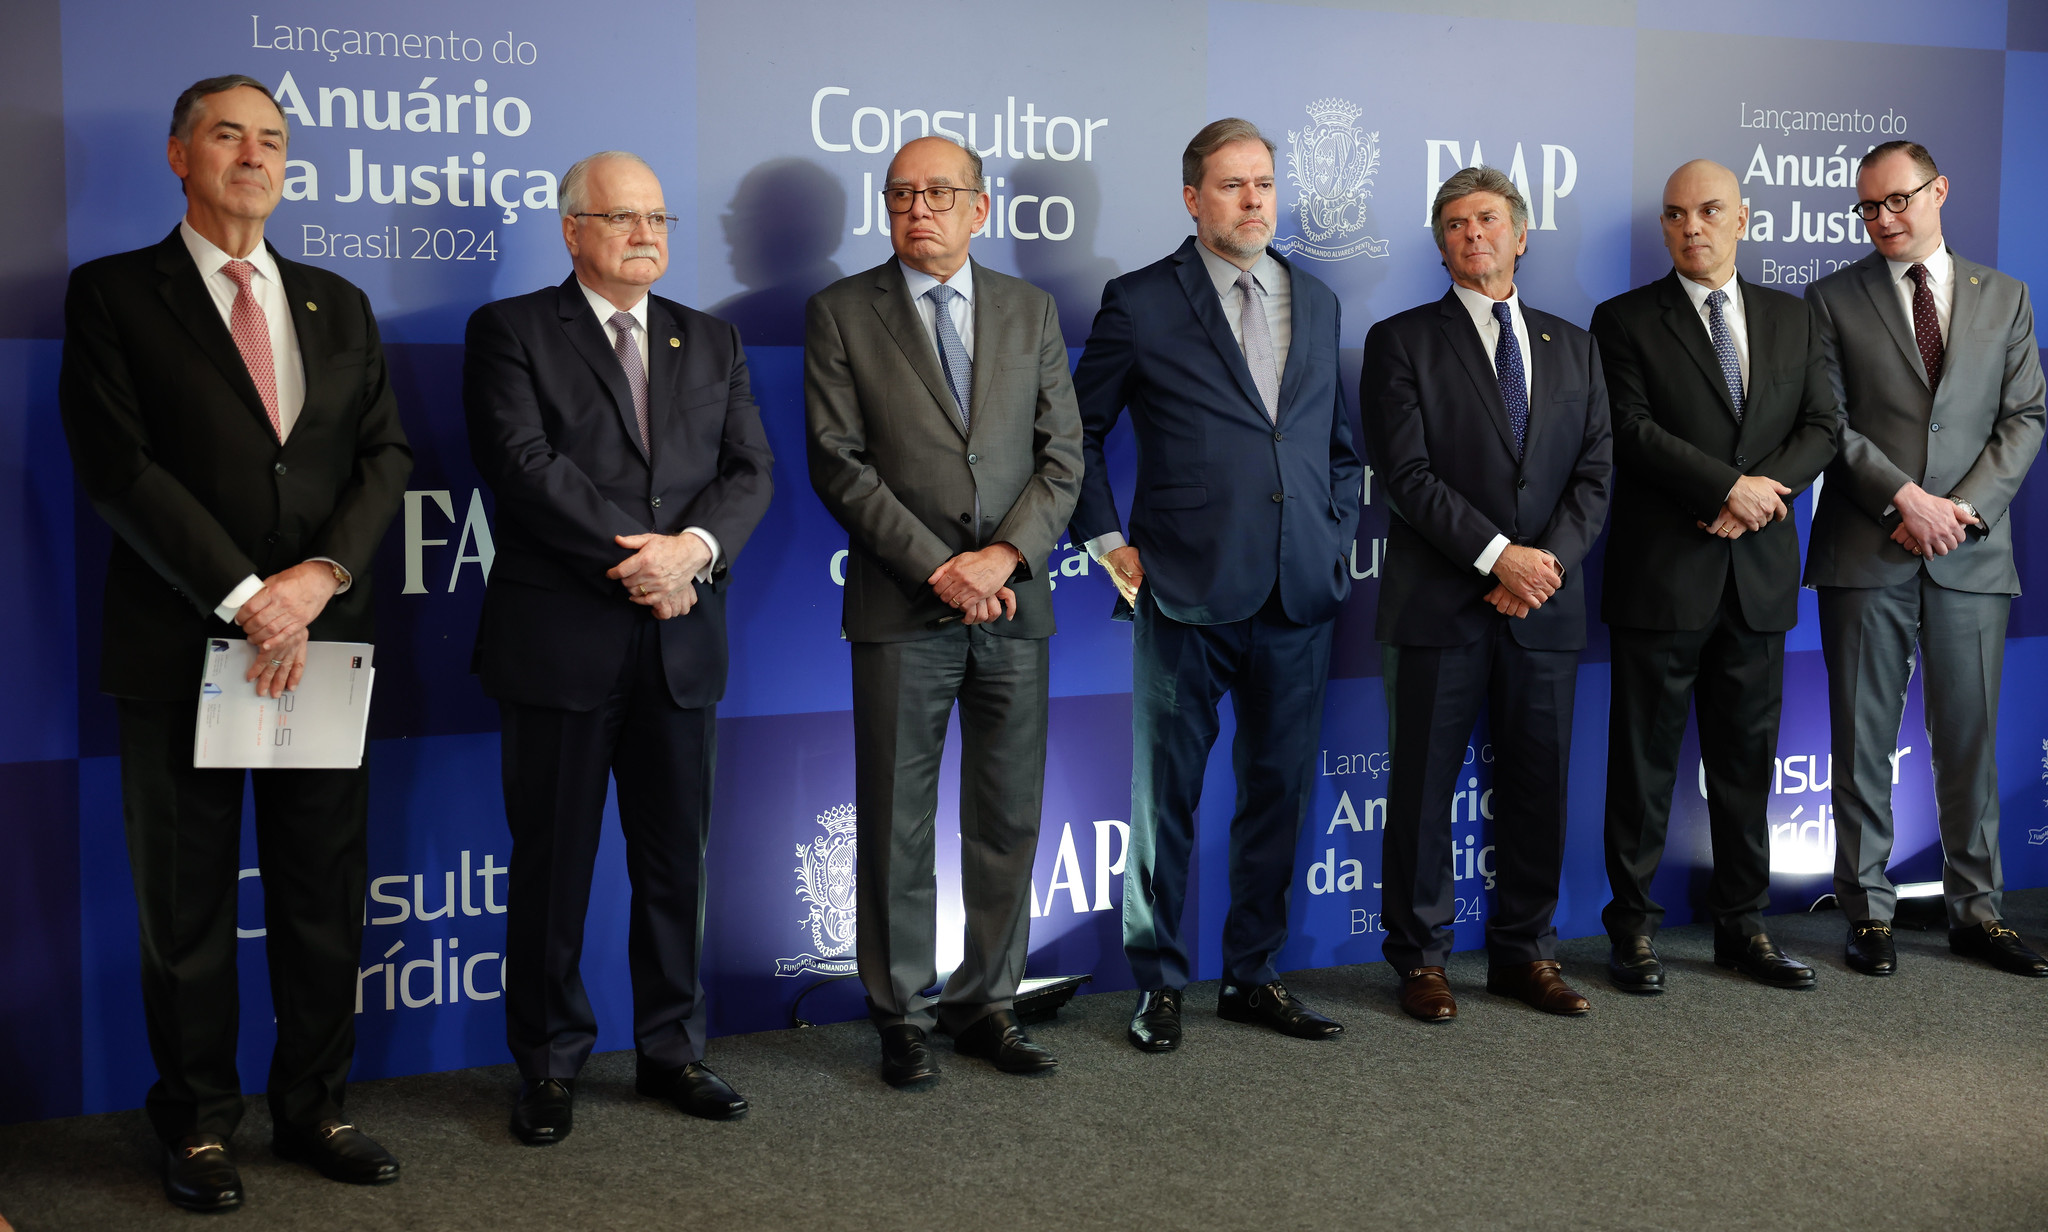 Luís Roberto Barroso, Edson Fachin, Gilmar Mendes, Dias Toffoli, Luiz Fux, Alexandre de Moraes e Cristiano Zanin